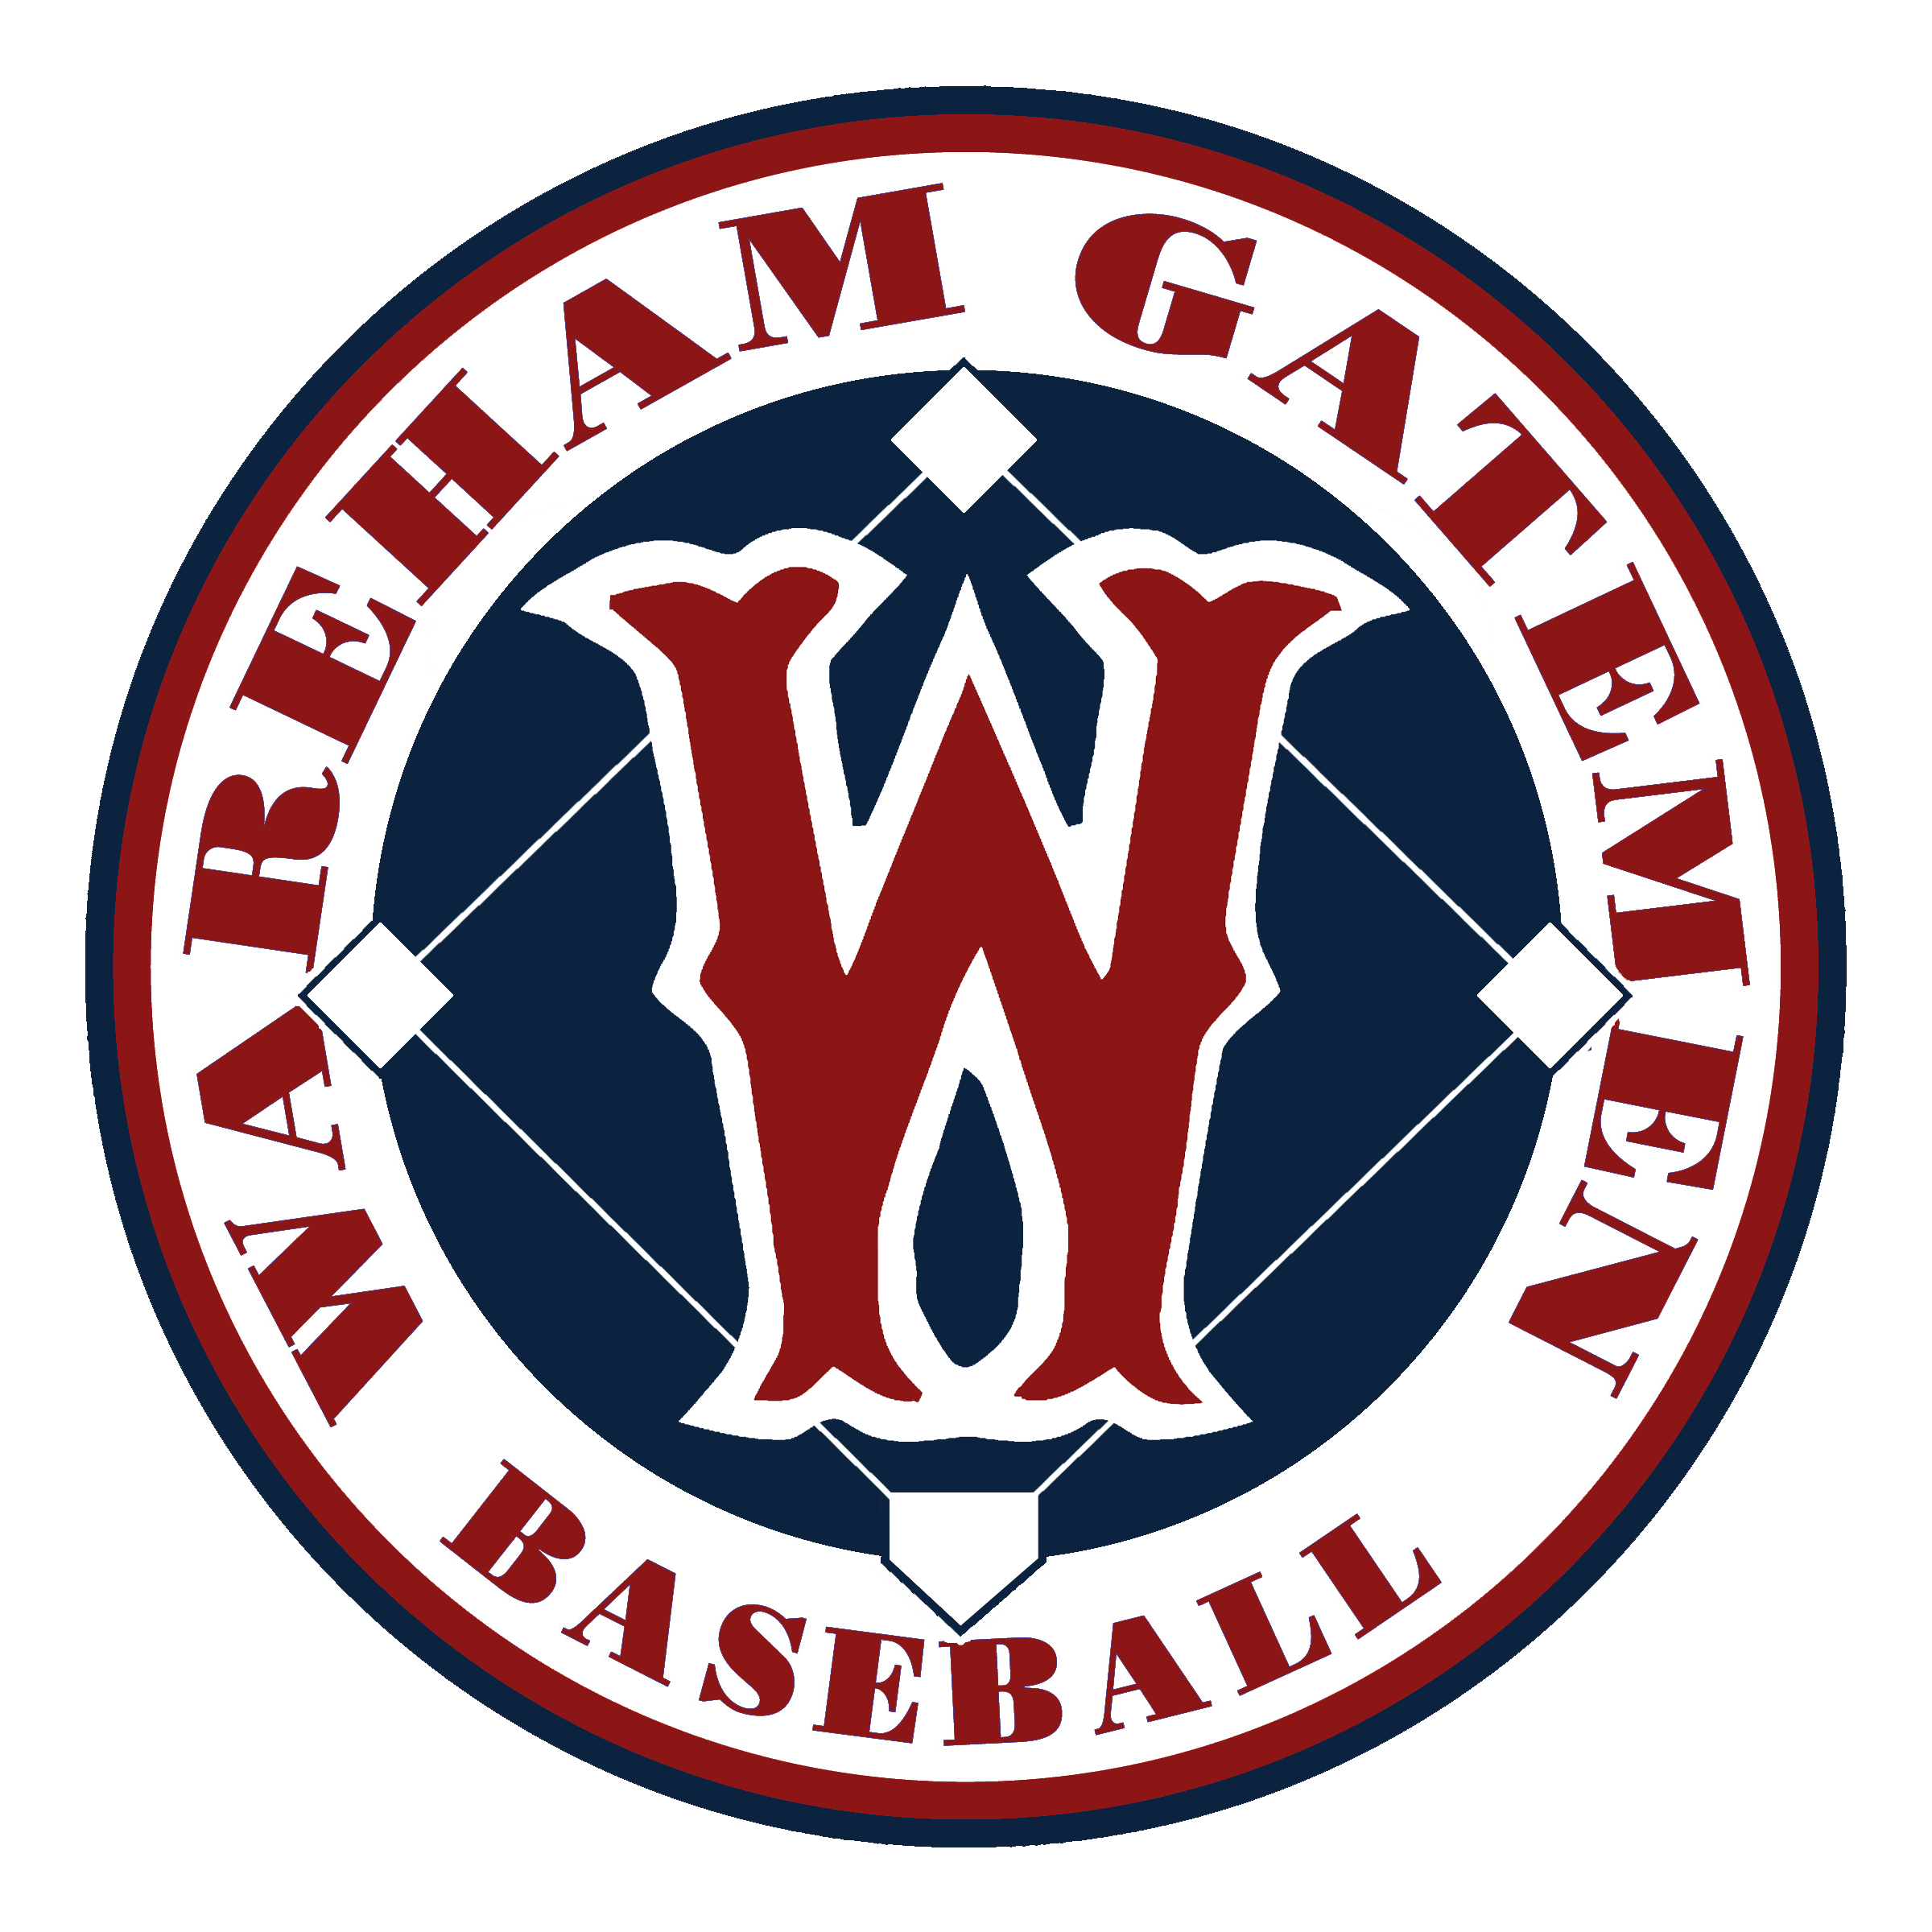 Wareham Gatemen Baseball